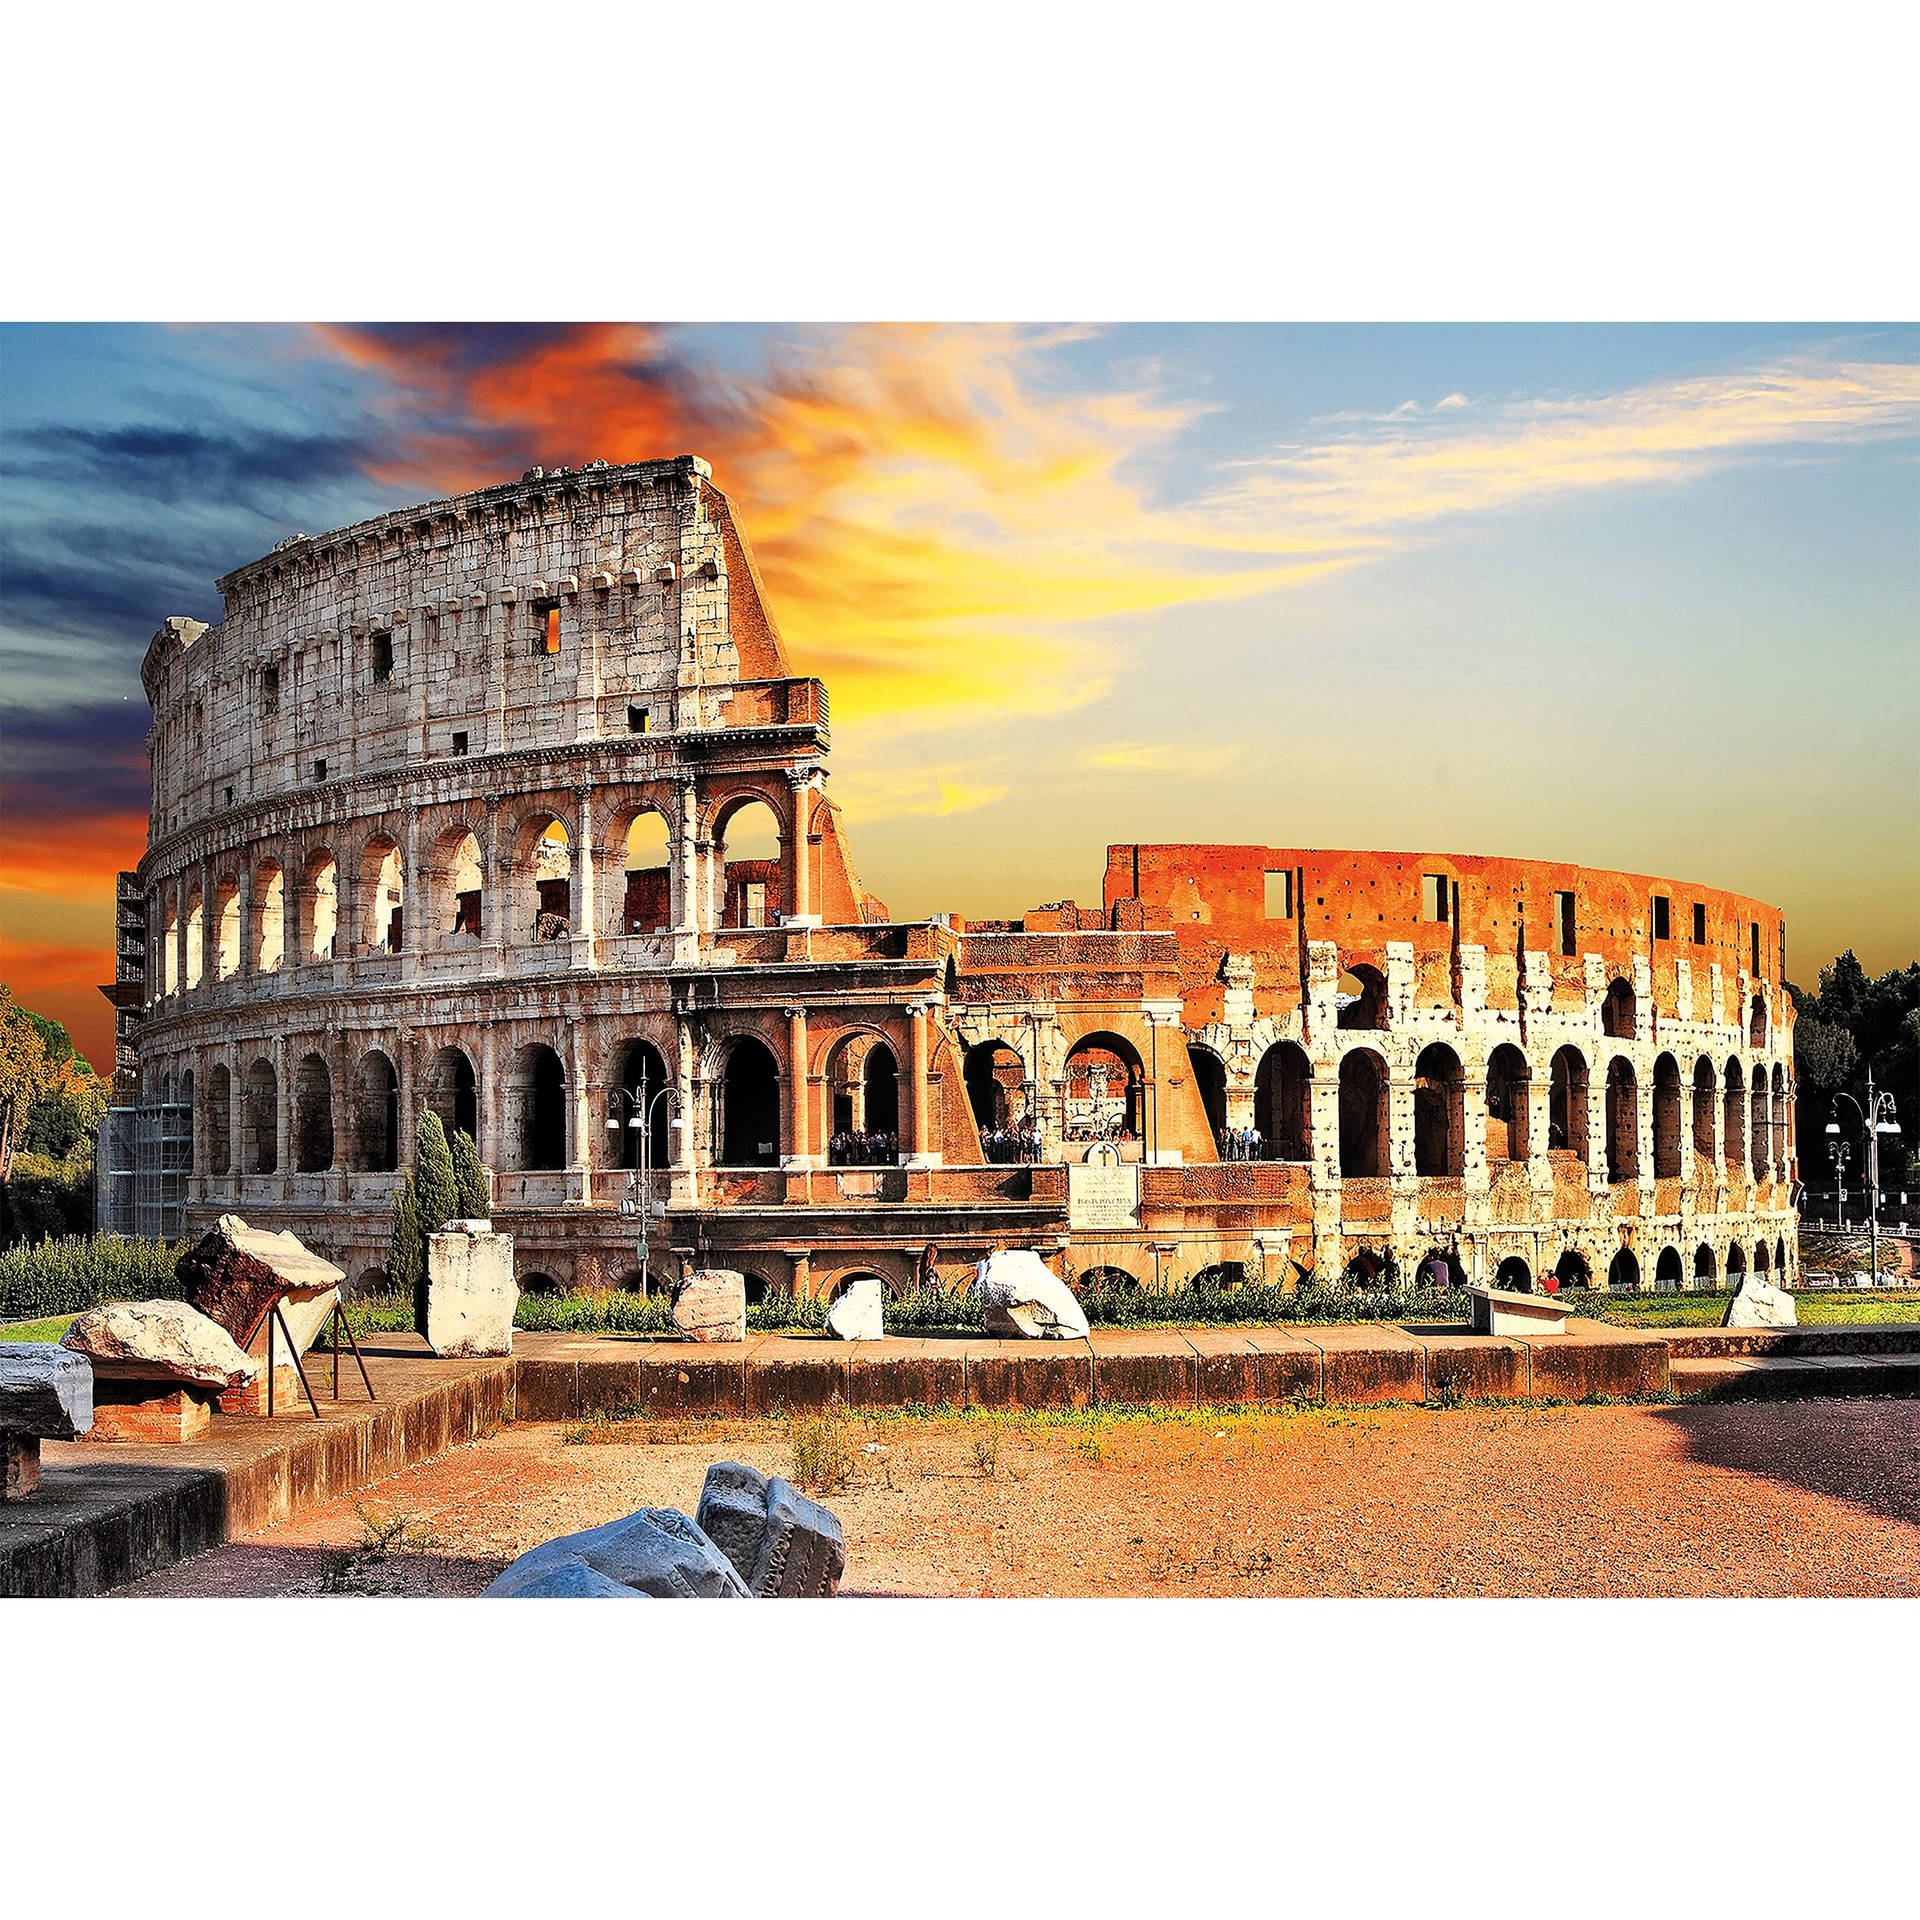 Smukke Colosseum Under Solnedgang Himmel Wallpaper